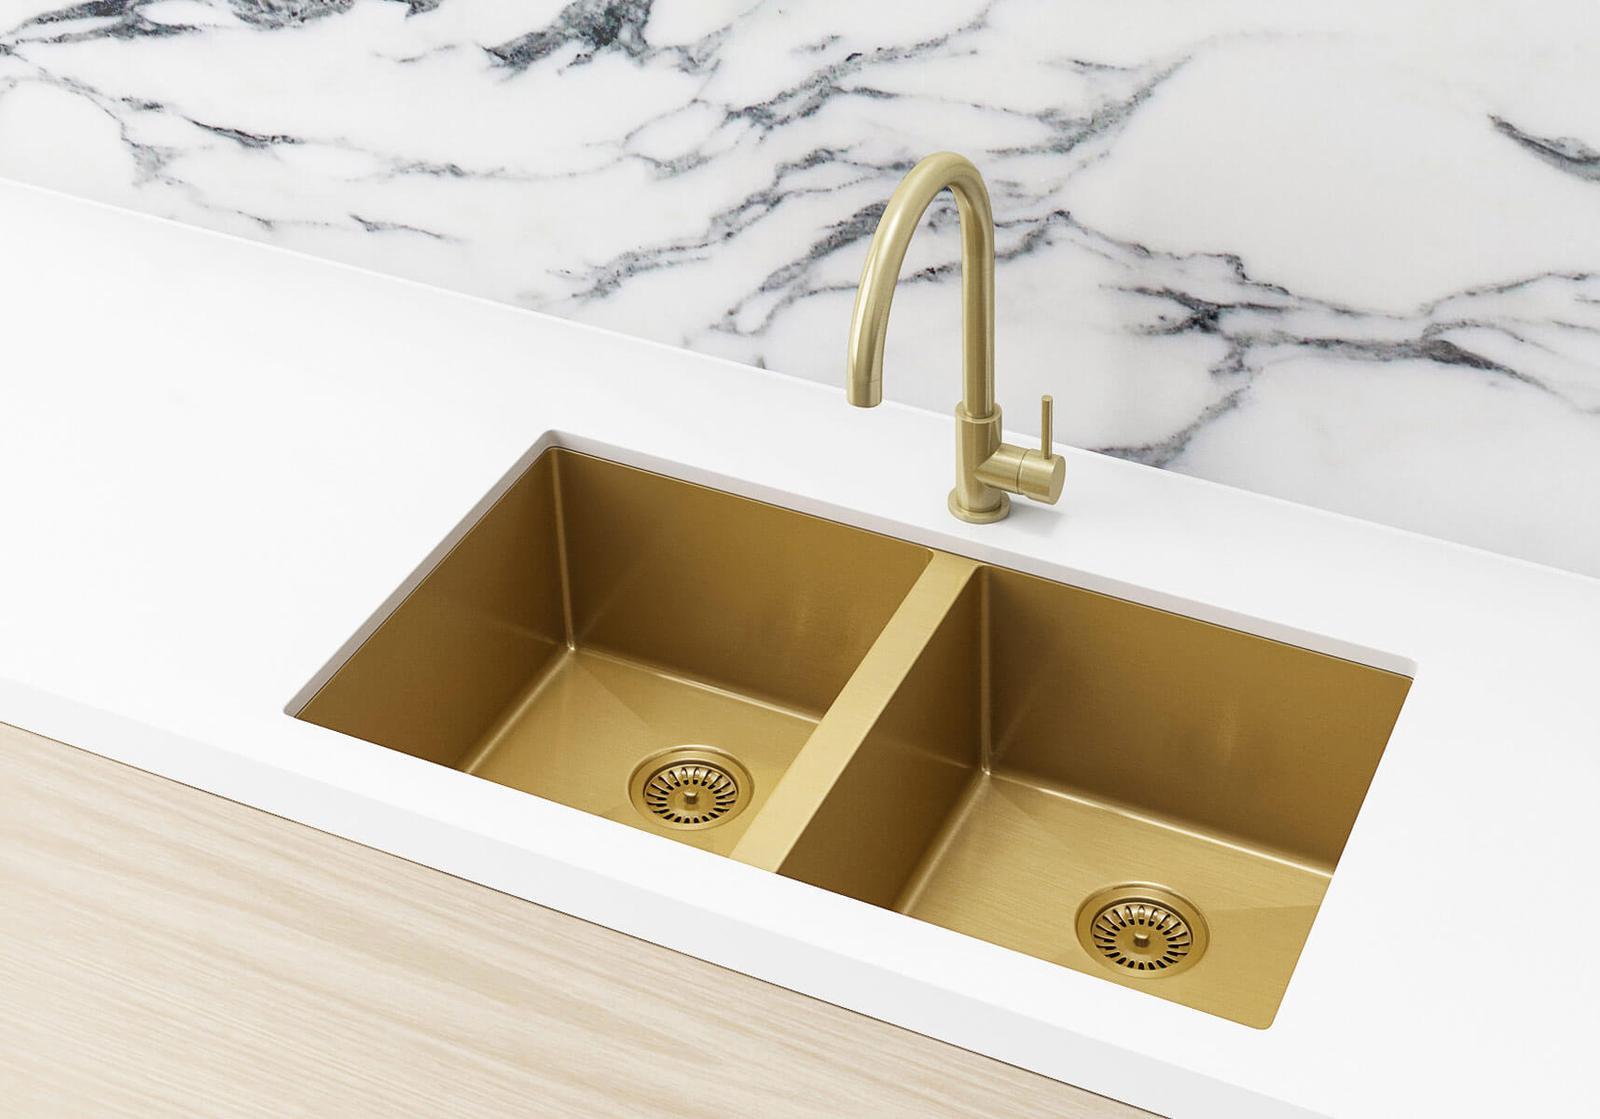 bronze kitchen sink sizes